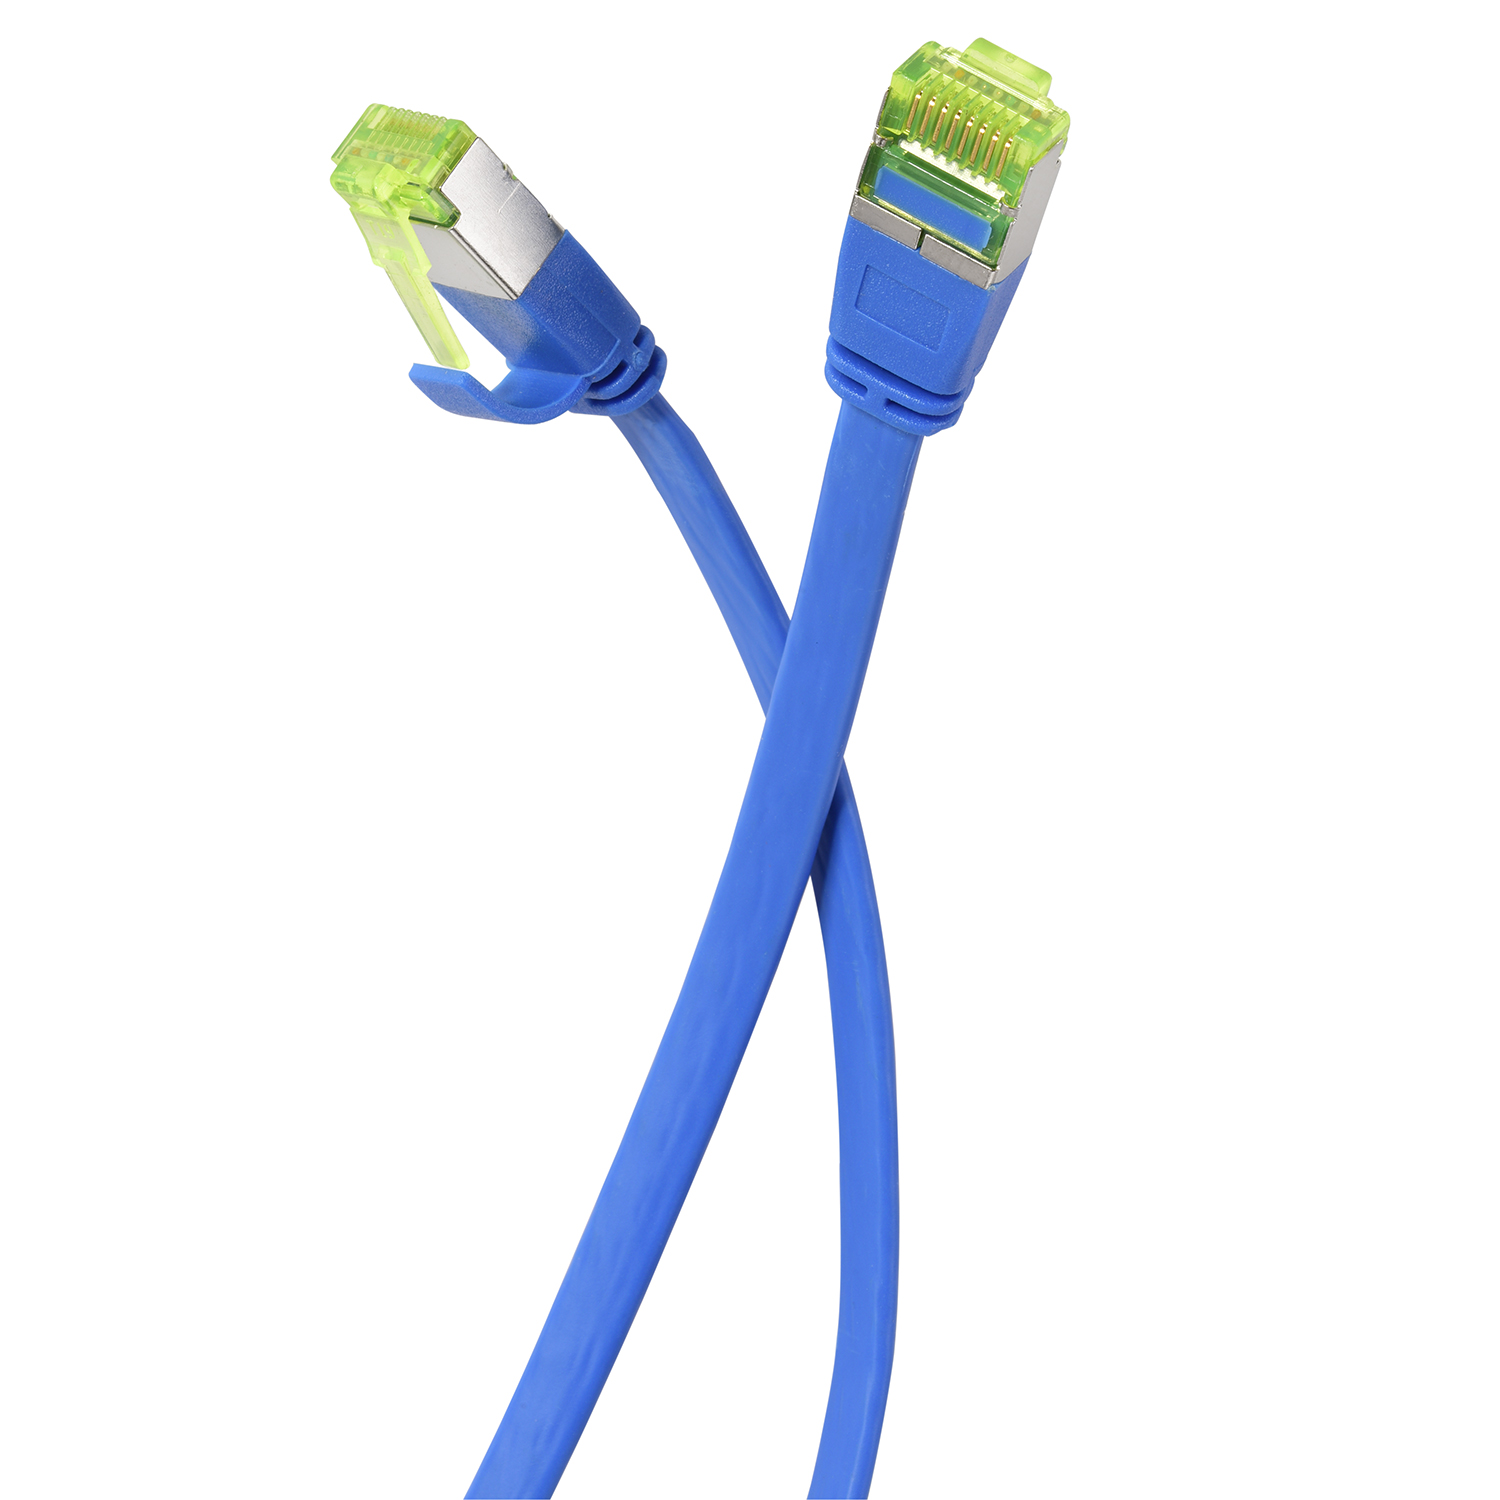 TPFNET 5er Pack 7,5m Patchkabel Flachkabel U/FTP 7,5 m blau, 10 GBit, Netzwerkkabel, 